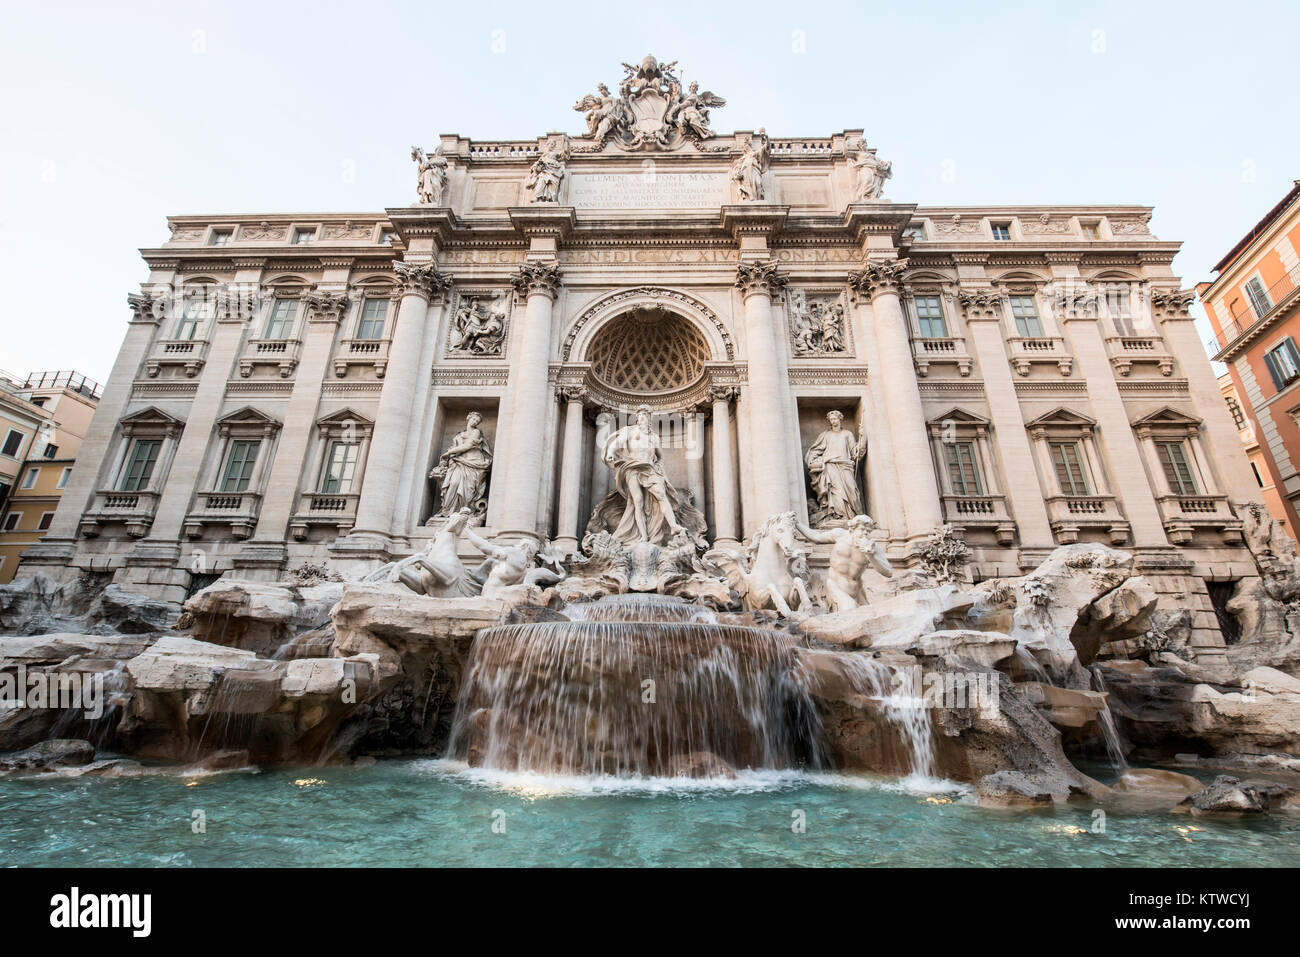 Fotografía en color de una vista frontal de la fuente de Trevi en Roma. Foto de stock